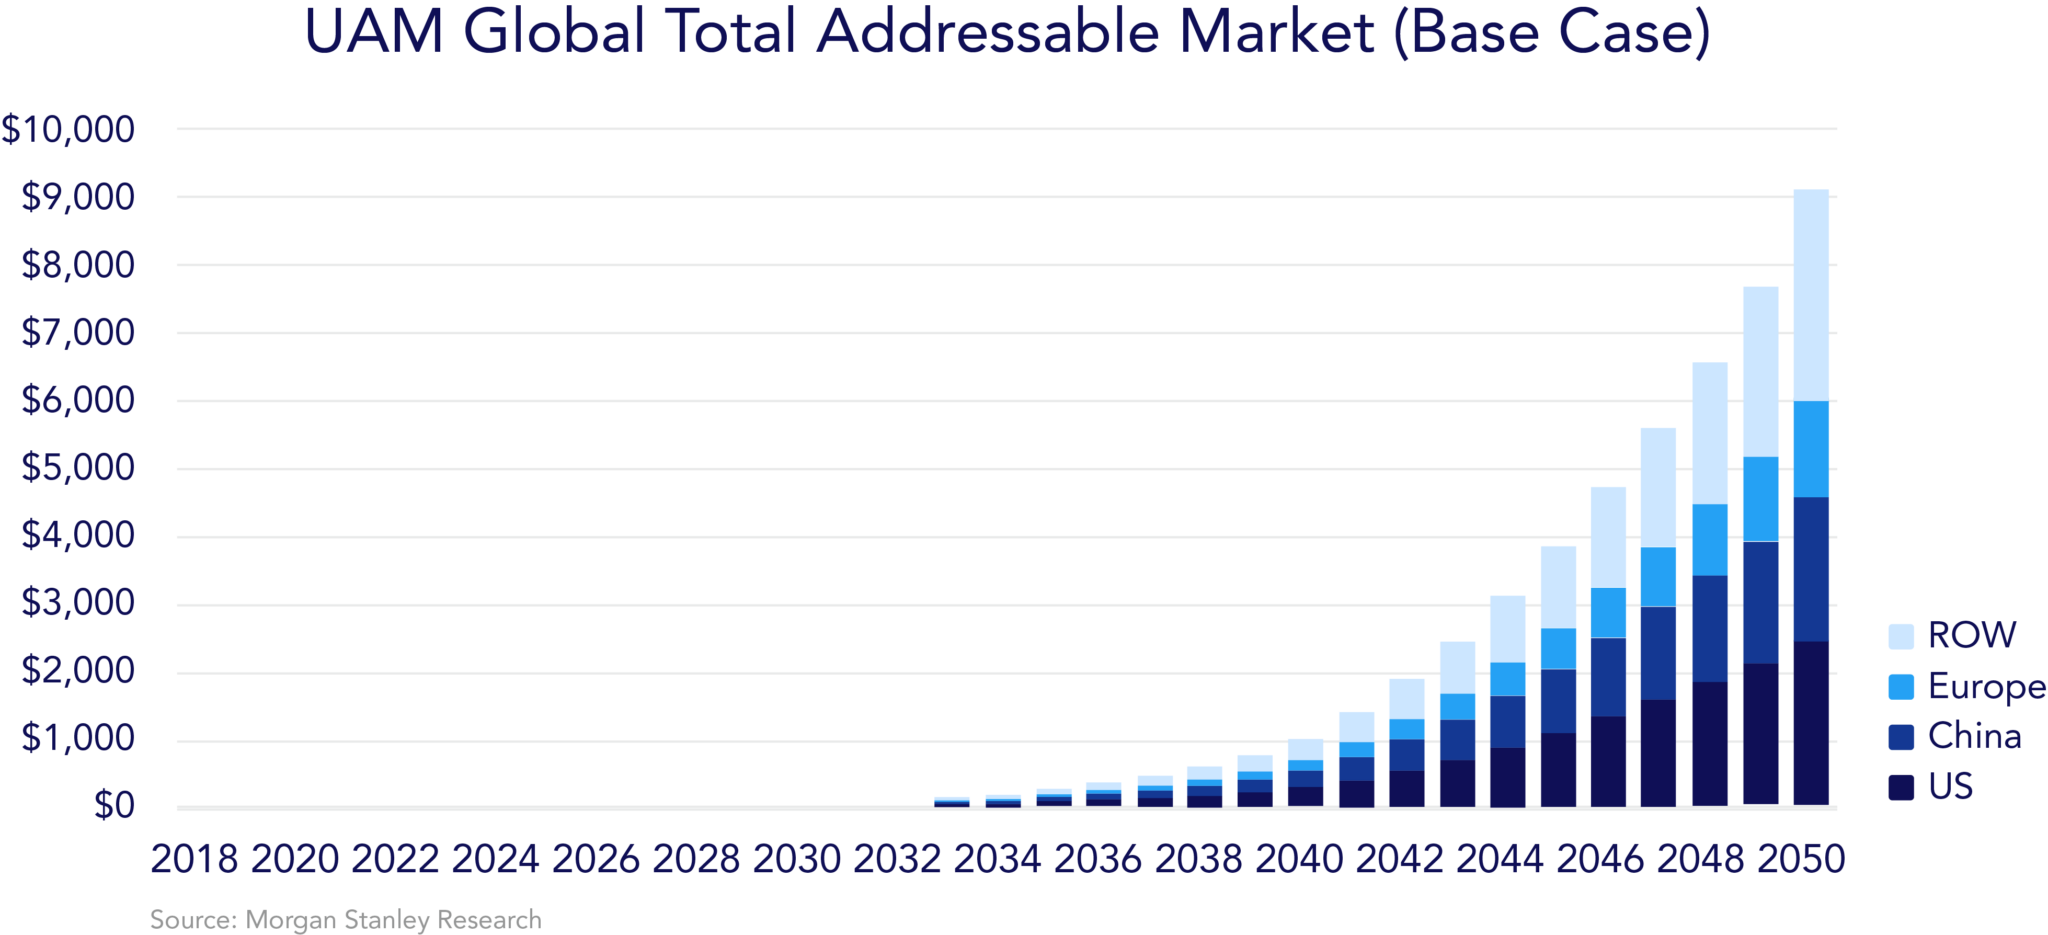 UAM Global Total Addressable Market (Base Case)